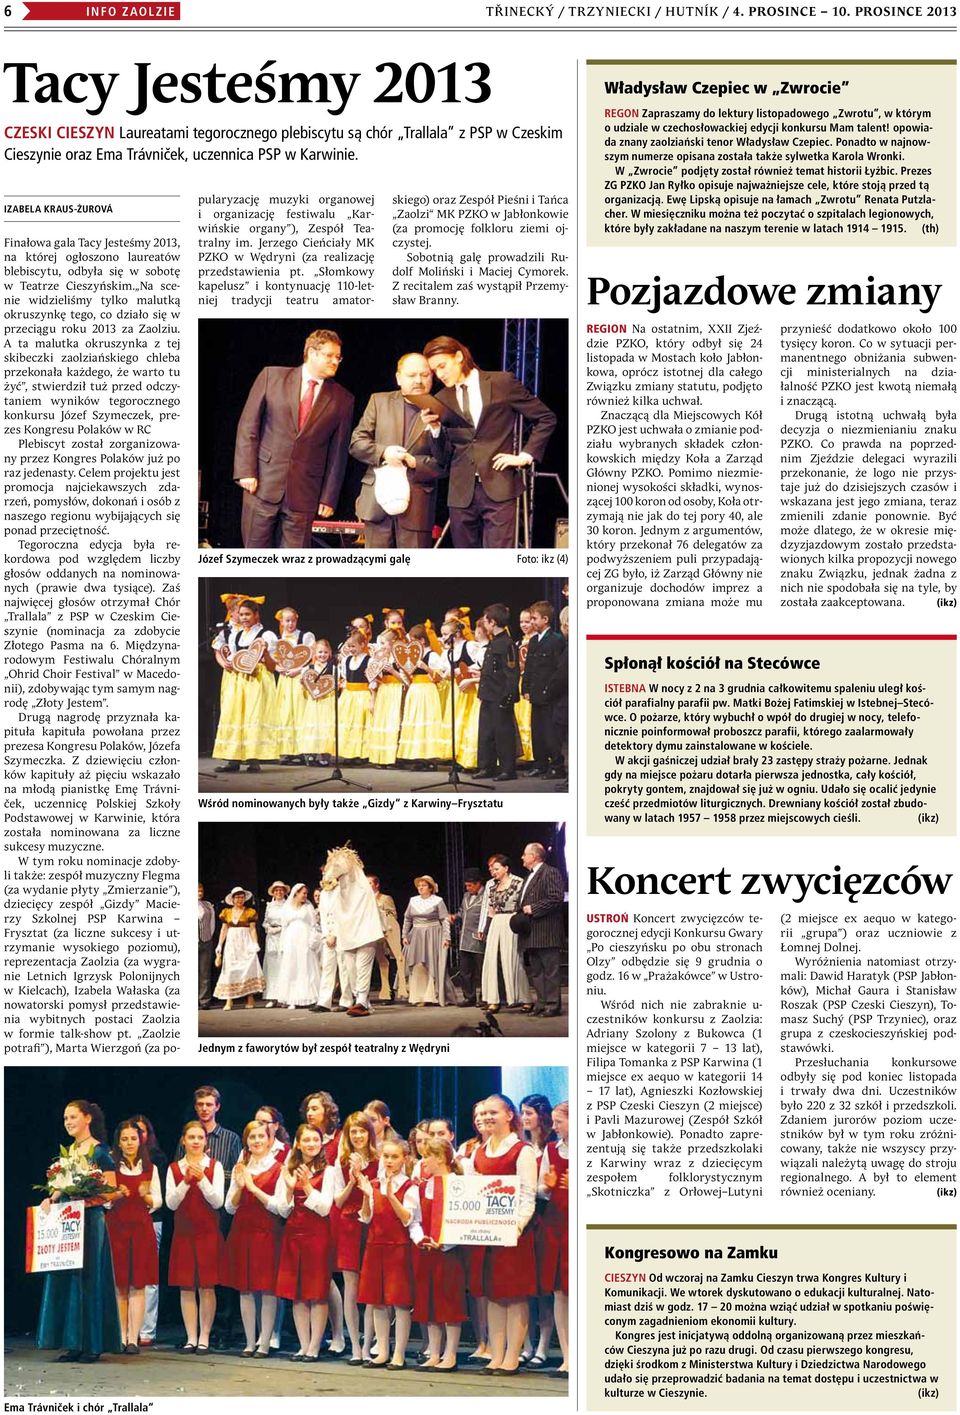 Izabela Kraus-Żurová Finałowa gala Tacy Jesteśmy 2013, na której ogłoszono laureatów blebiscytu, odbyła się w sobotę w Teatrze Cieszyńskim.